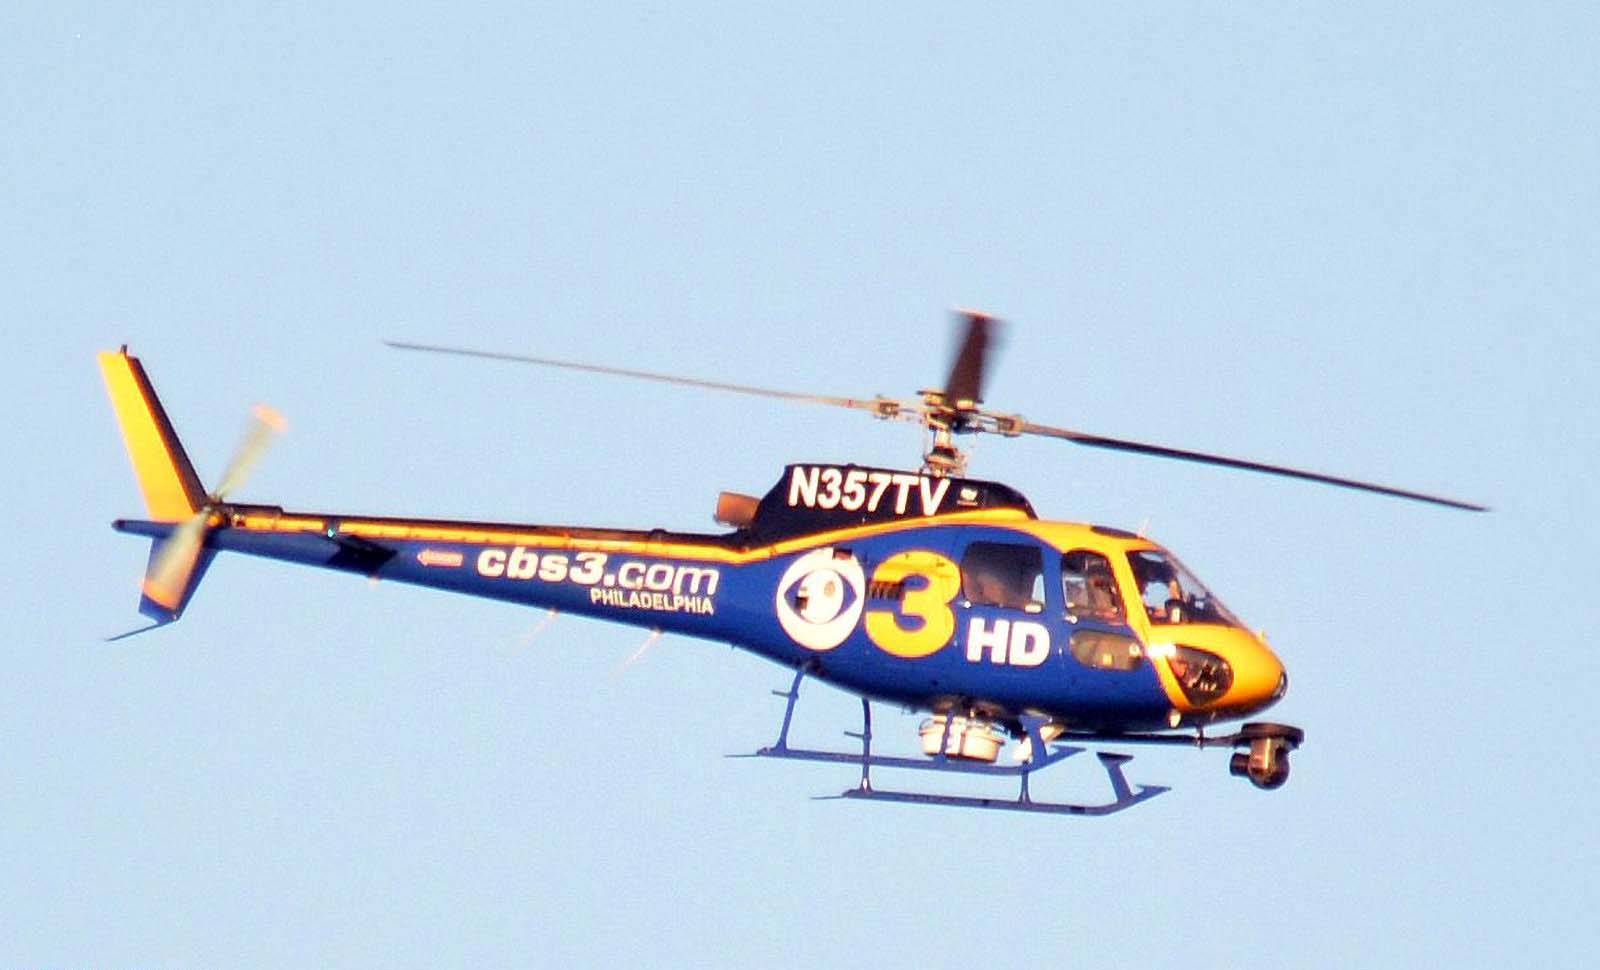 CBS 3 News Philly news chopper